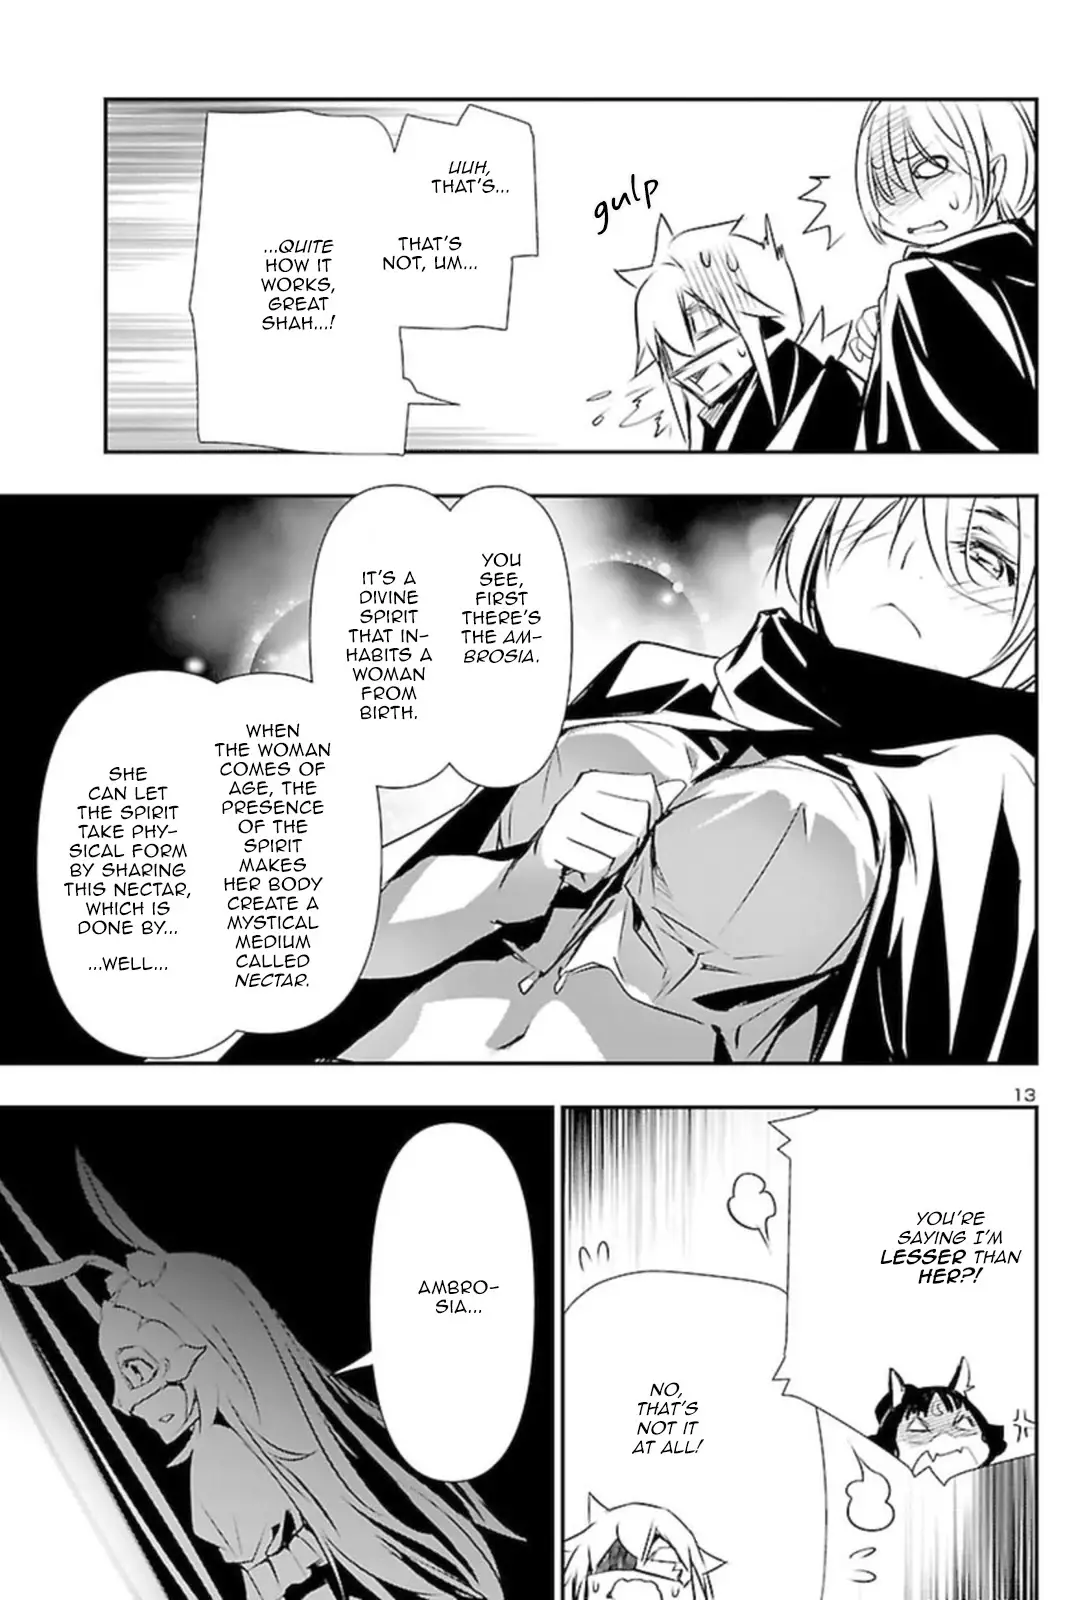 Shinju no Nectar - 60 page 12-41ec7c01